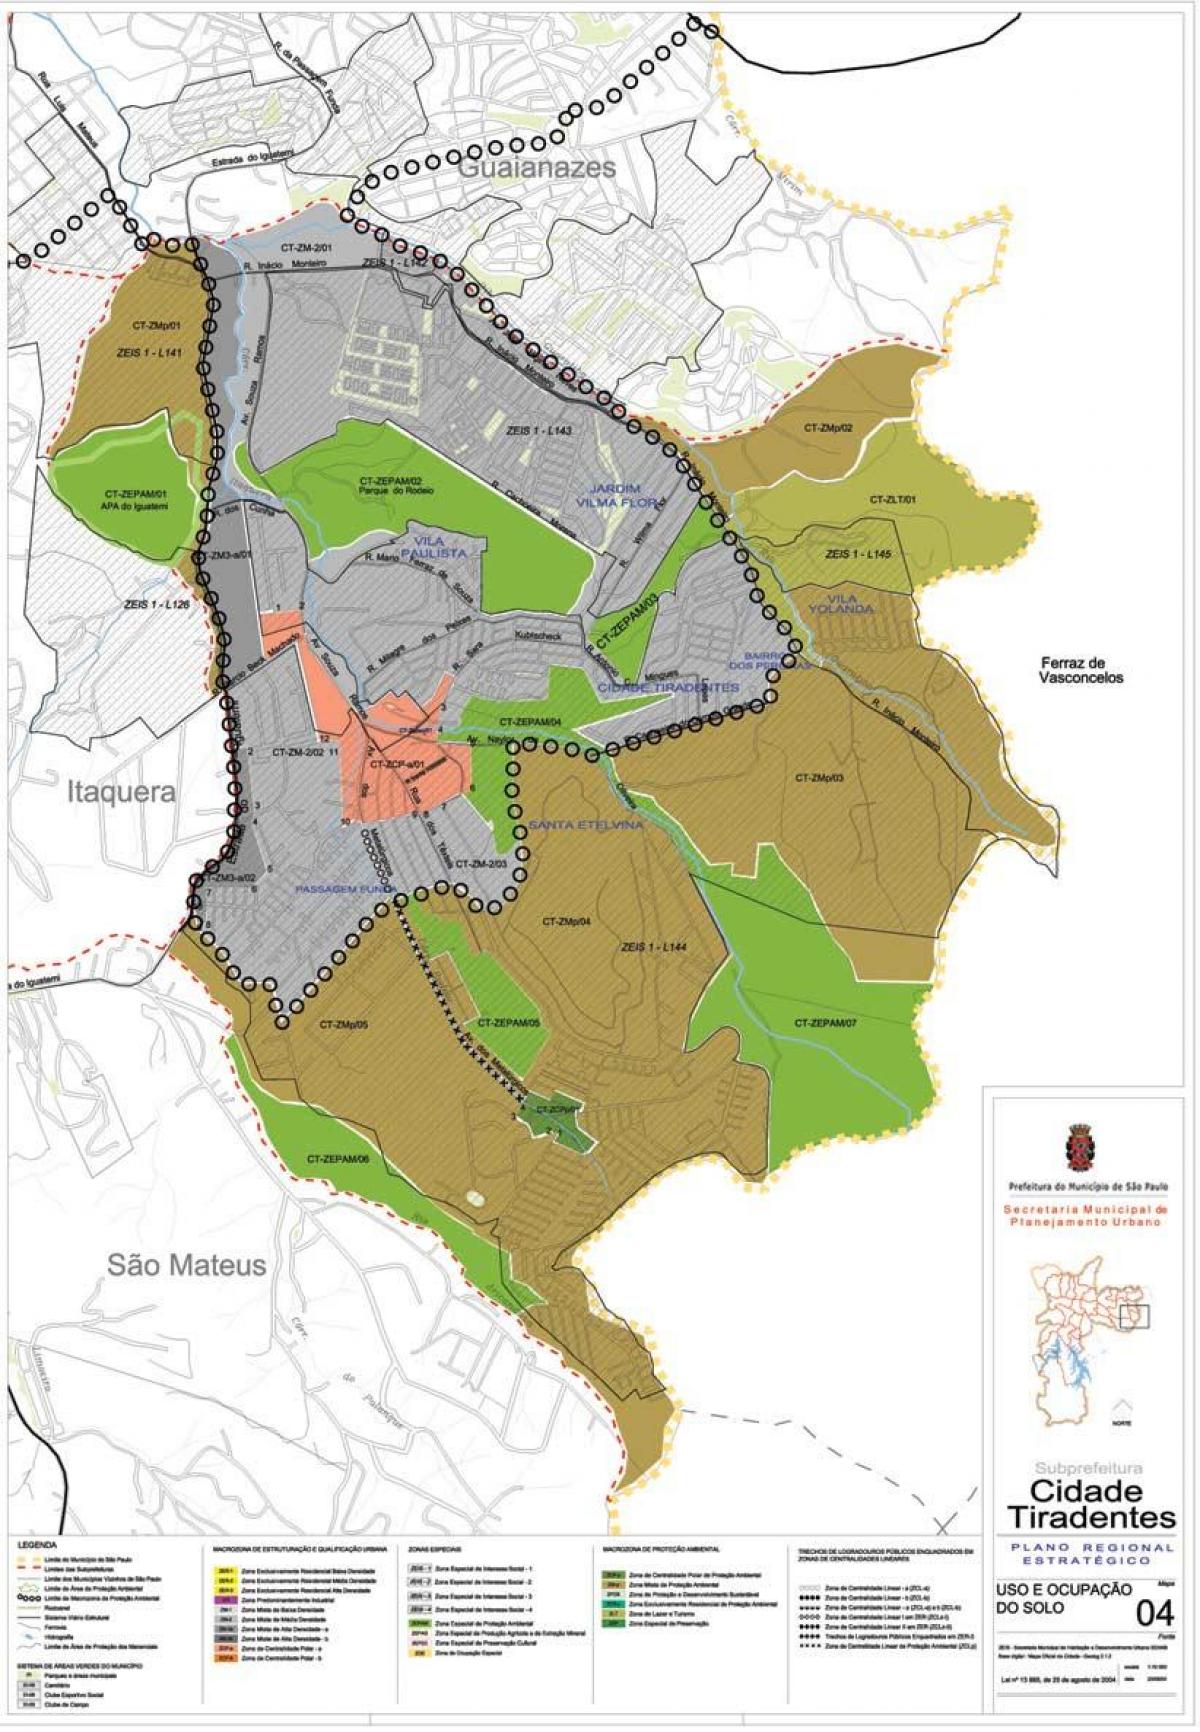 نقشه کیدد تیردنتس São Paulo - اشغال خاک